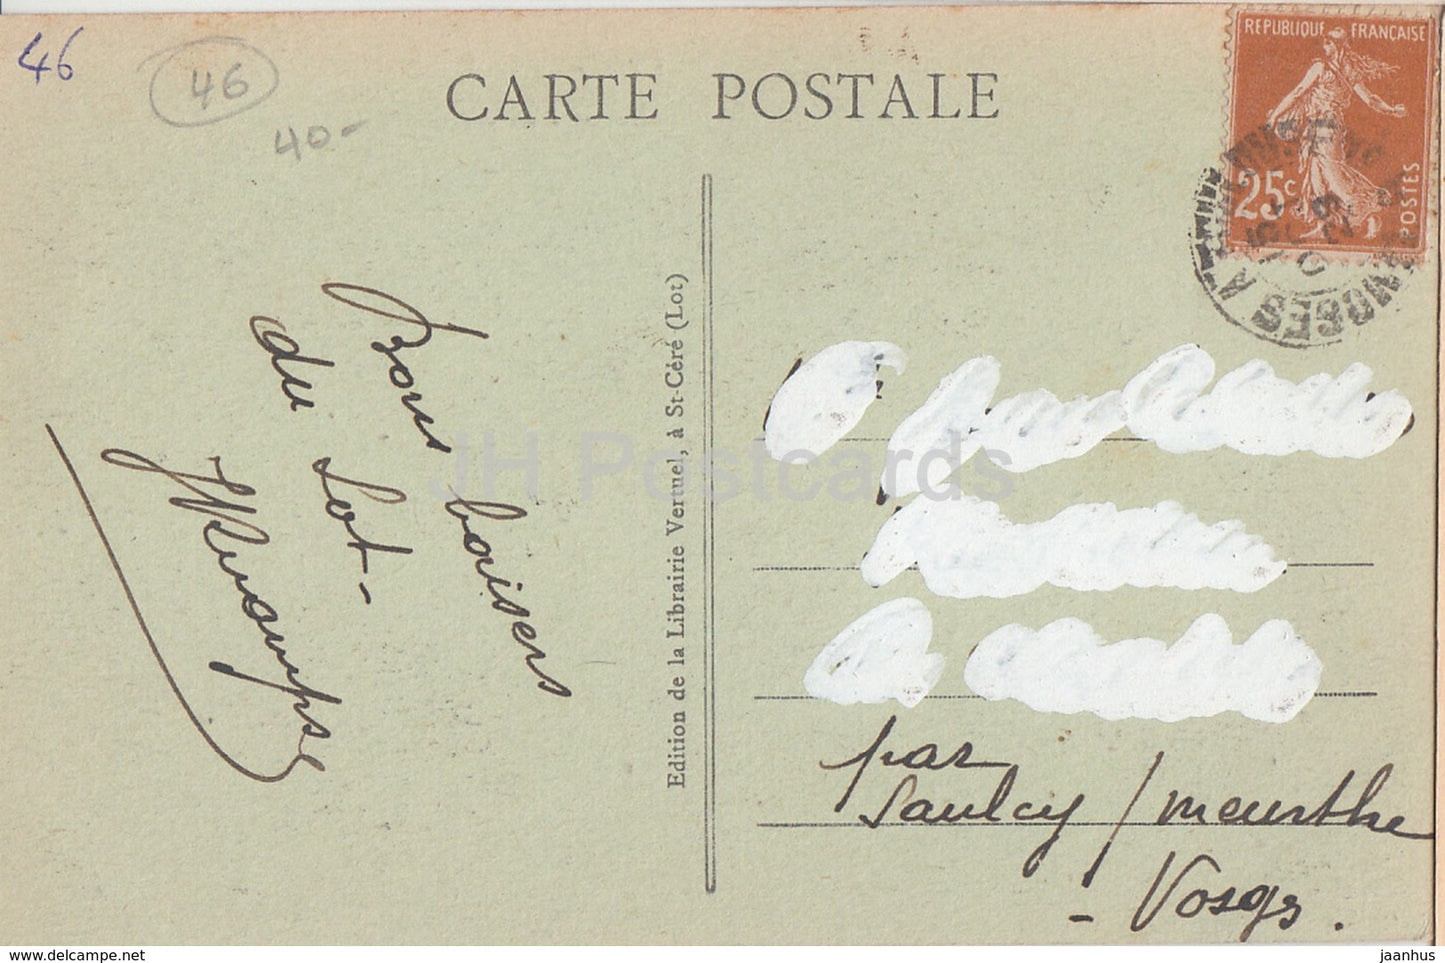 Le Chateau d'Assier - Portrait et Signature de Galiot de Genouillac - castle - 683 - old postcard - 1929 - France - used